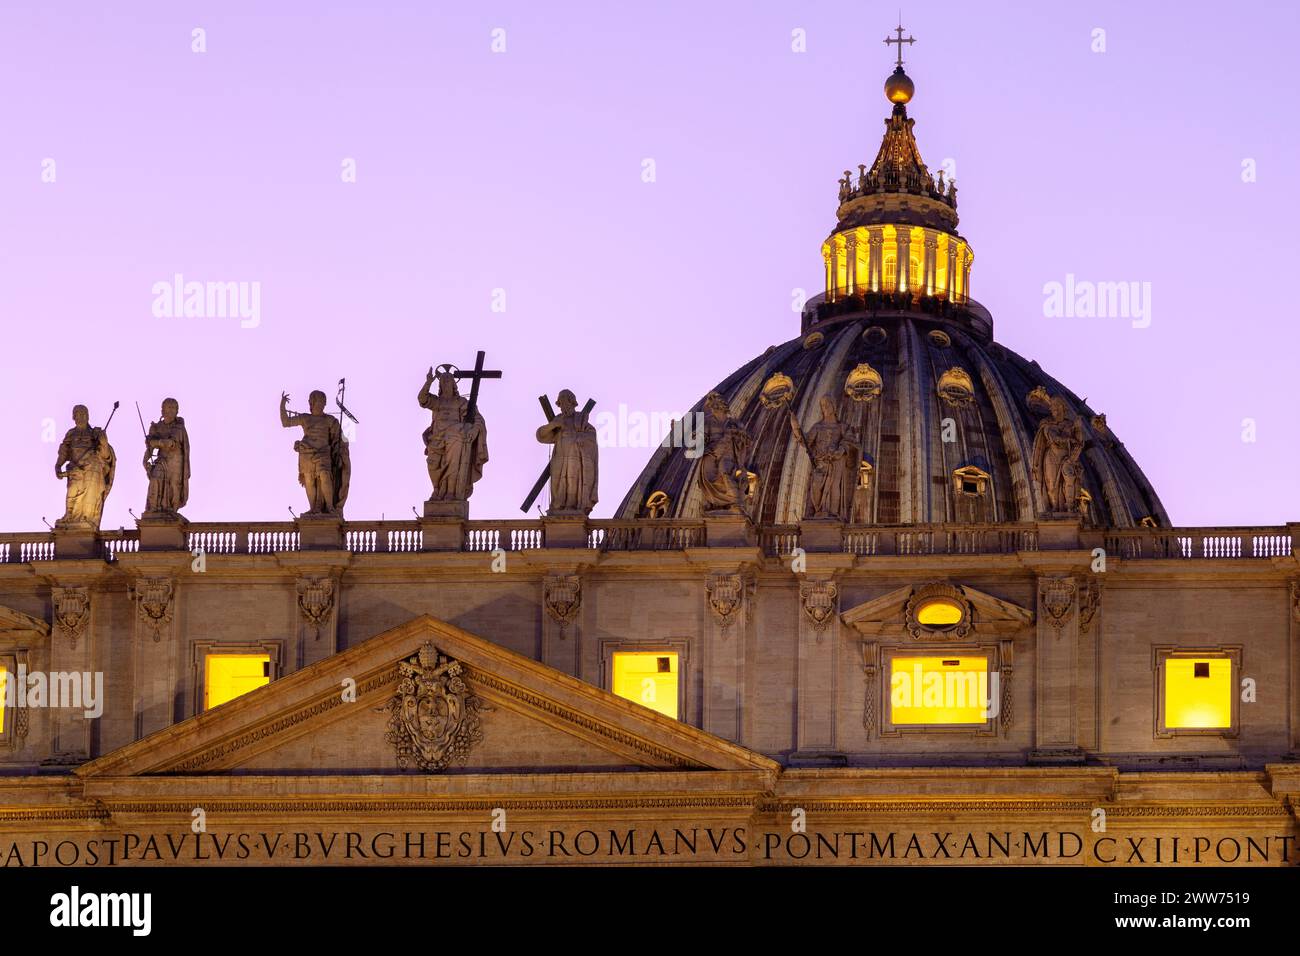 Dettagli: st sul tetto della Basilica di San Pietro (Cattedrale di San Pietro) della città del Vaticano durante il tramonto, con statue e cupola illuminata. Foto Stock